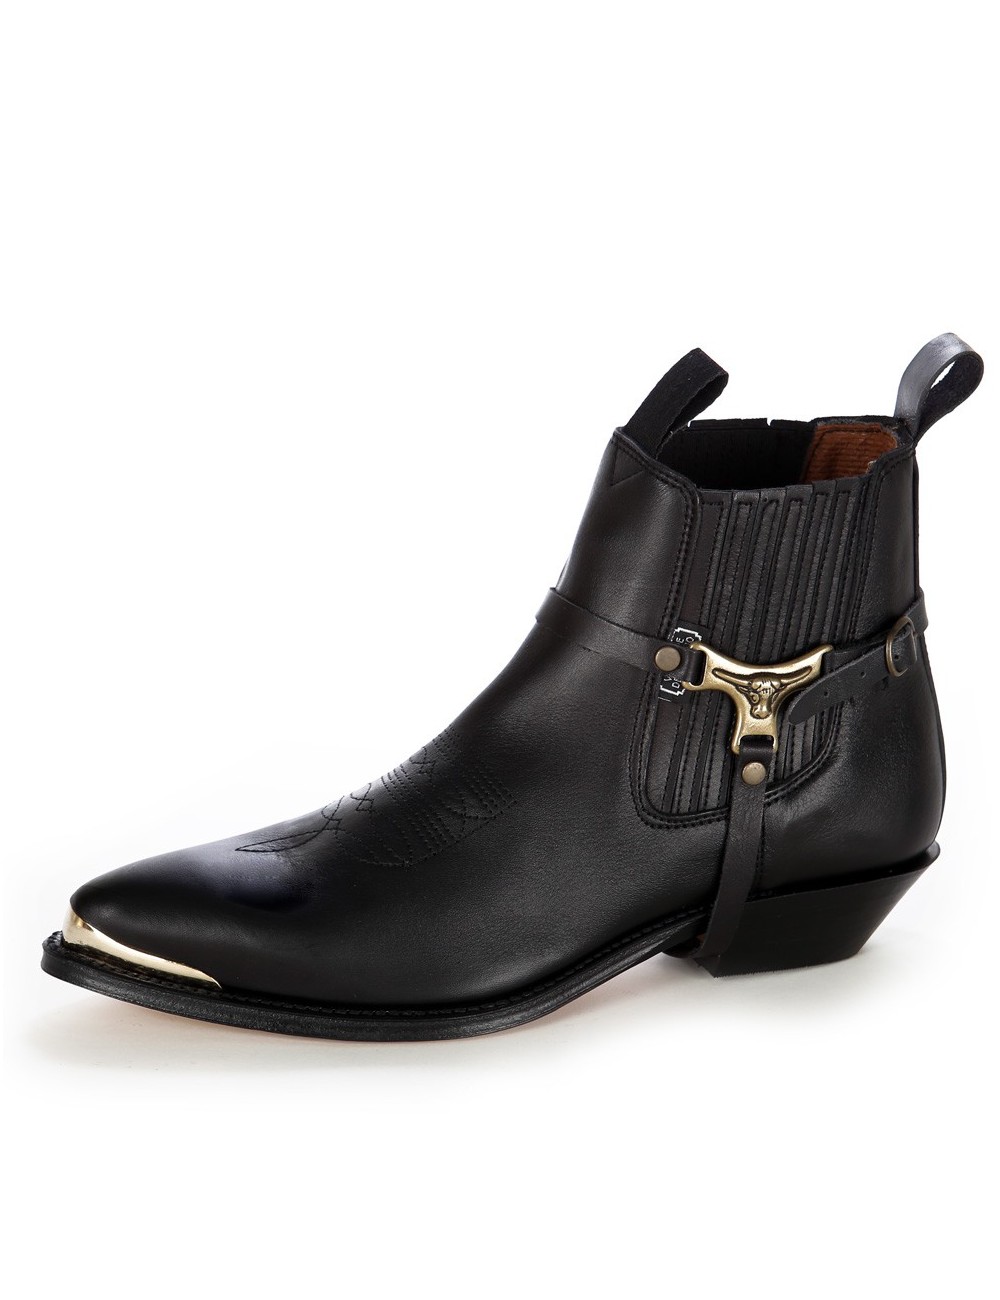 Boots western cuir noir bout ferré - Bottines cowboy artisanales